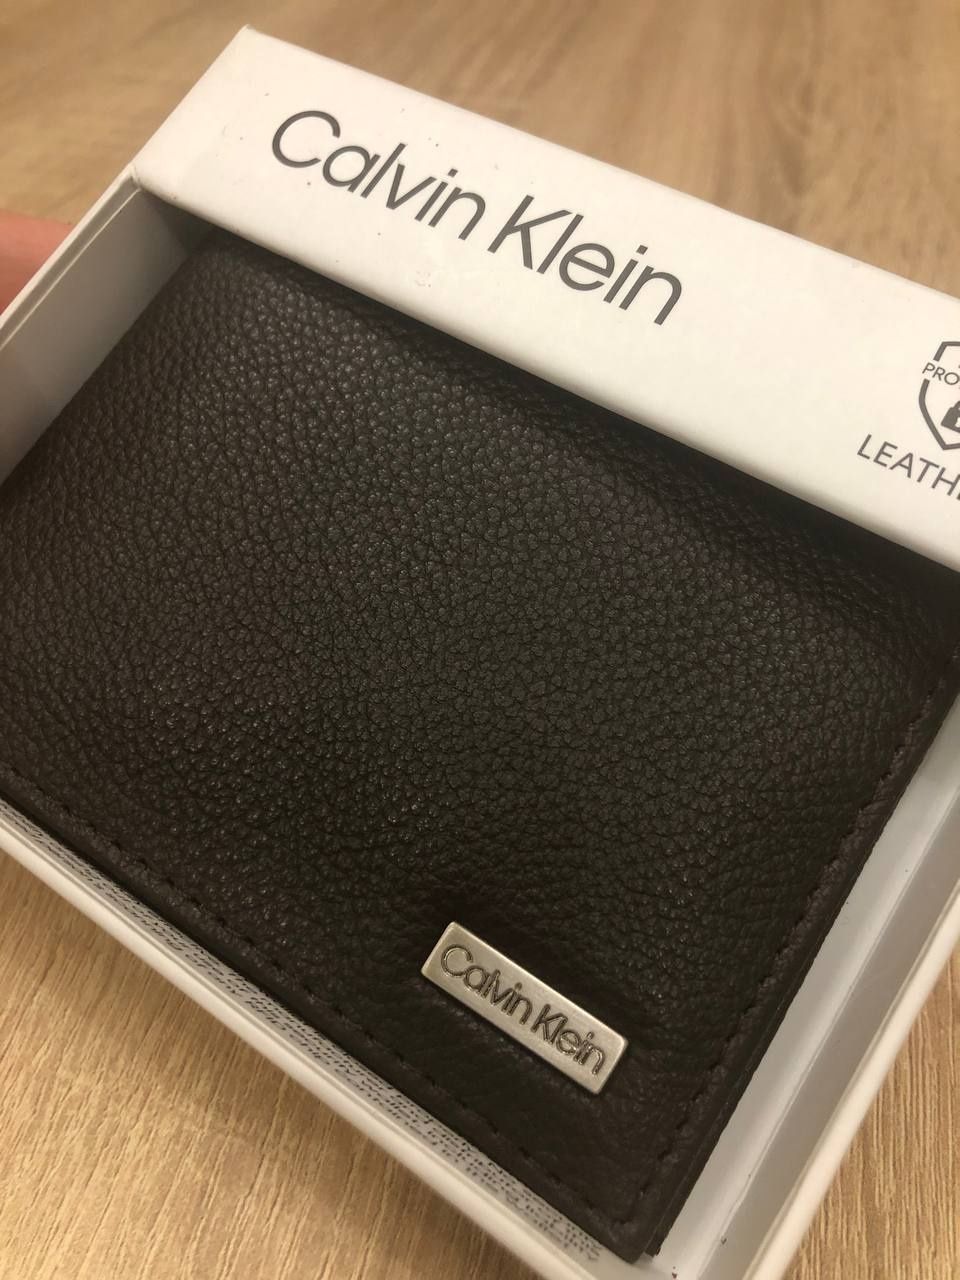 Calvin Klein гаманець портмоне кошильок чоловічий.
Натуральна шкіра.
Н